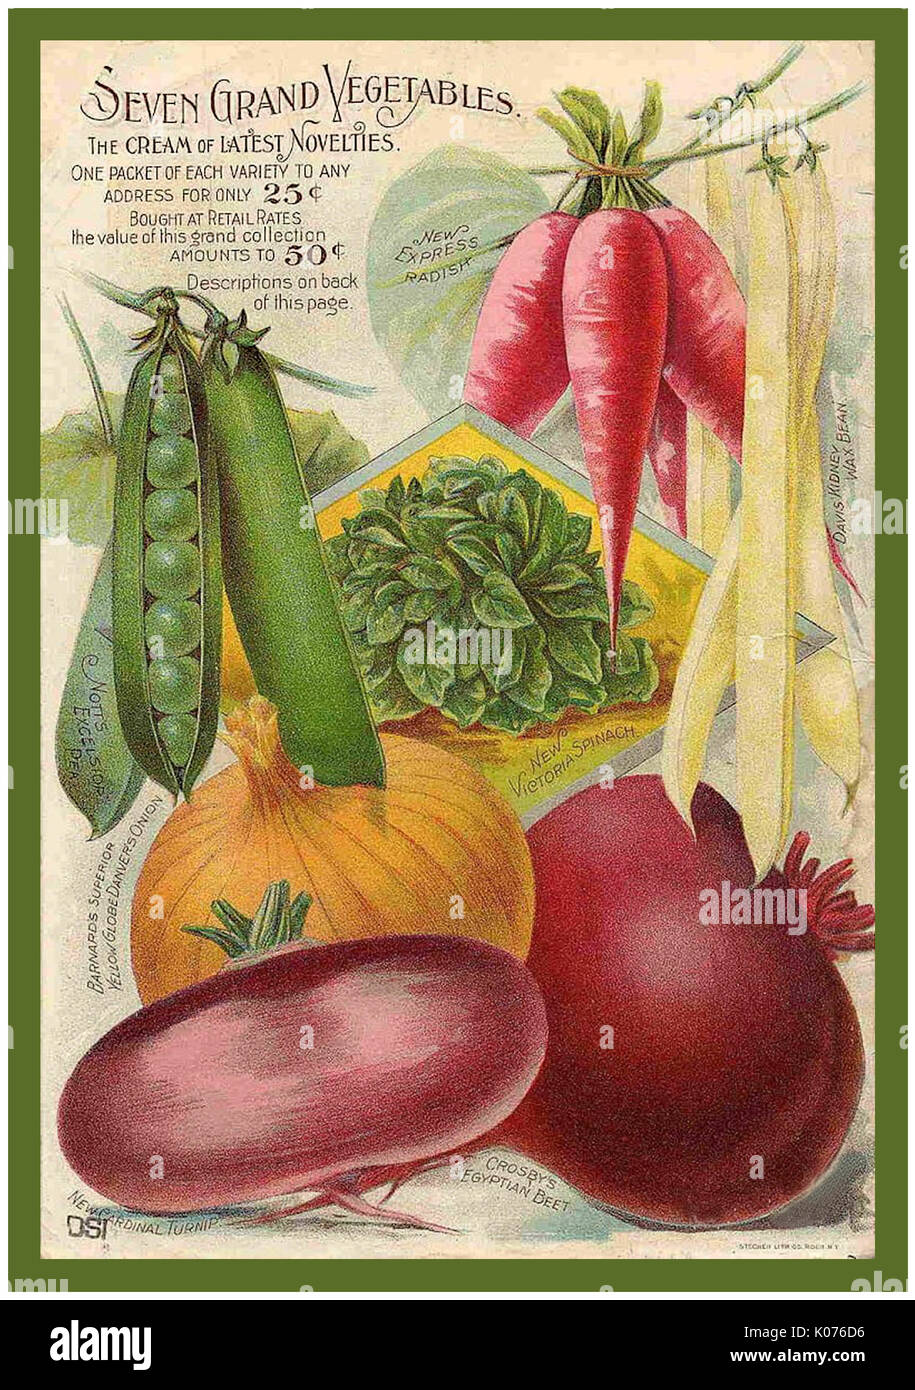 Jahrgang 1800 Samen Paket Poster Werbung. Barnard sieben Grand Gemüse Erbsen, Radieschen, Rüben, Zwiebeln Vintage Blumen Obst & Gemüse Saatgutpackungen Katalog Werbung Art Poster. Stockfoto